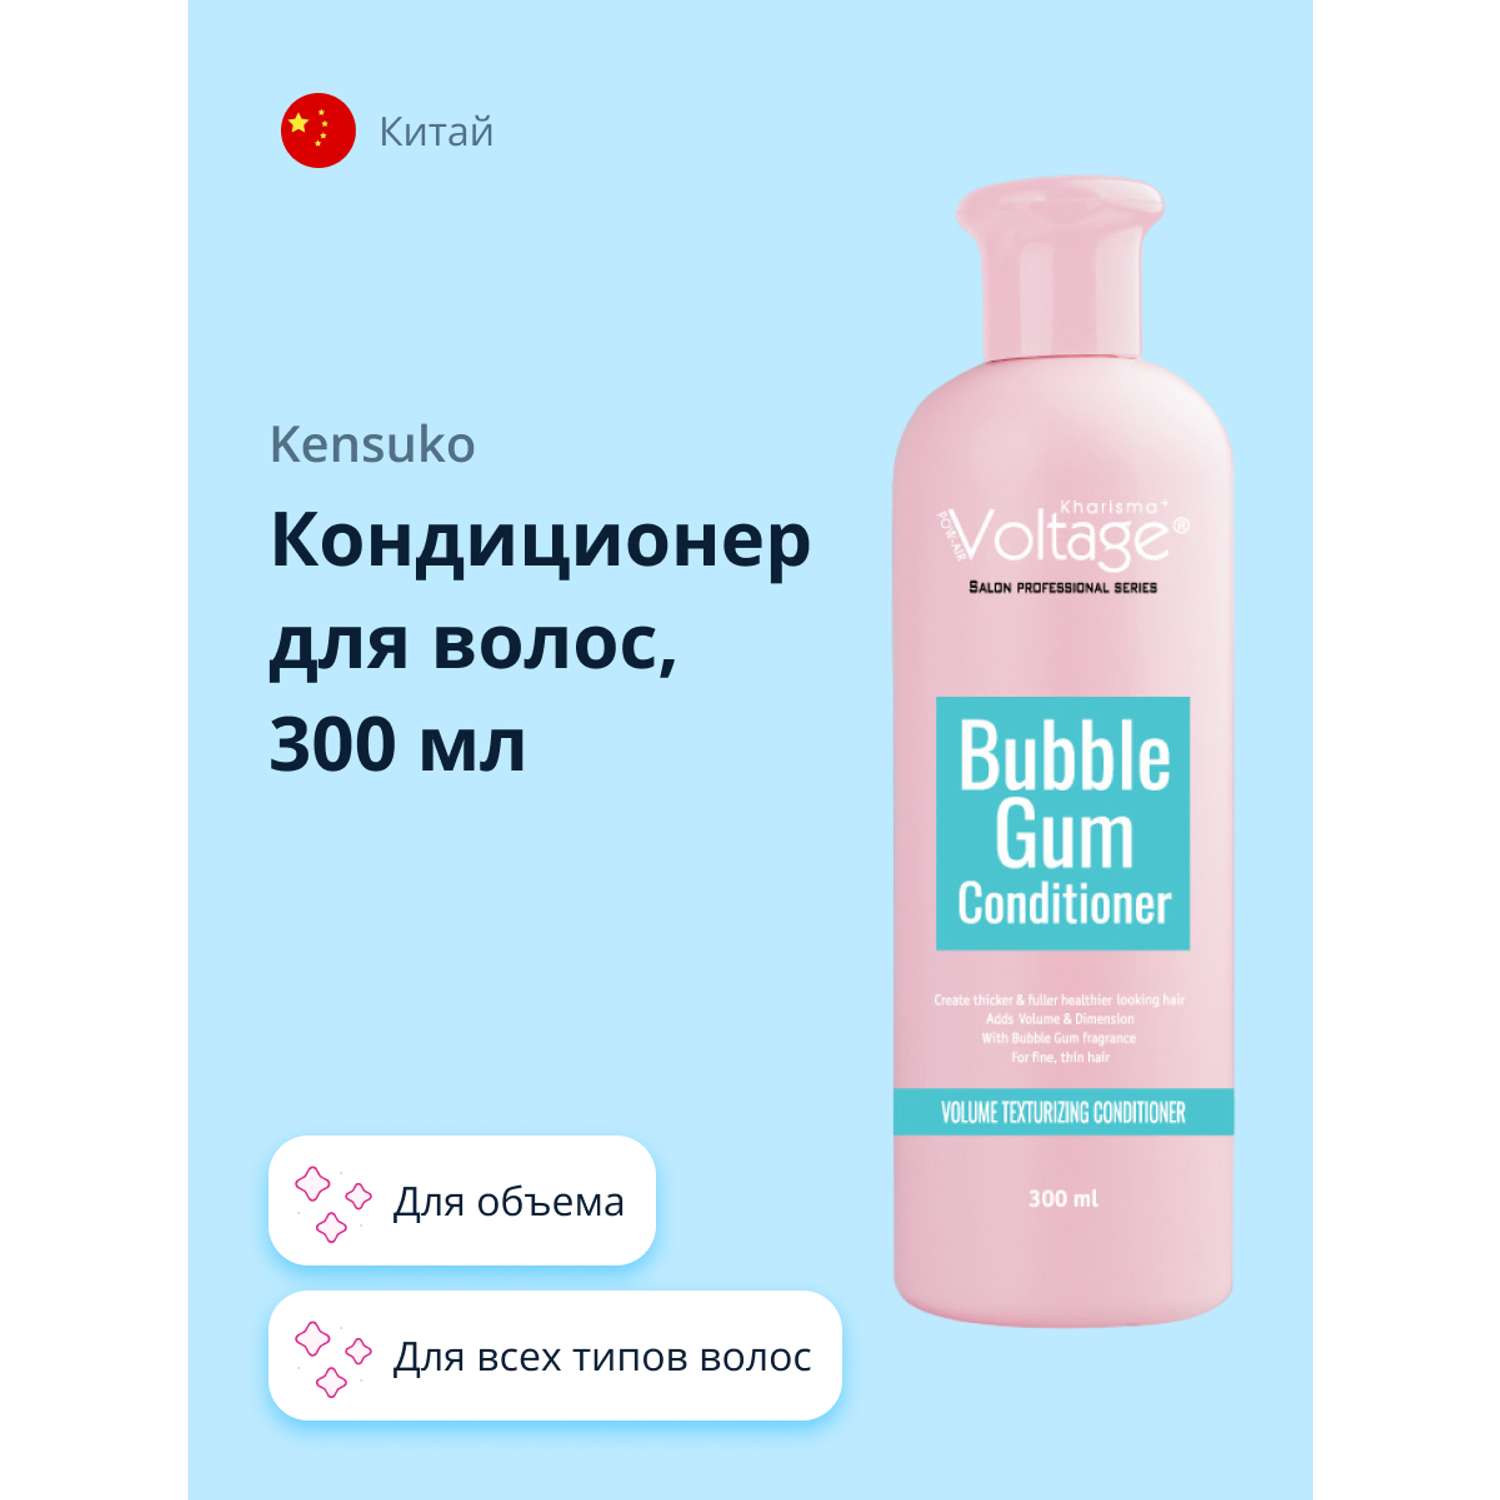 Кондиционер для волос Kharisma Voltage Bubble gum для объема 300 мл - фото 1